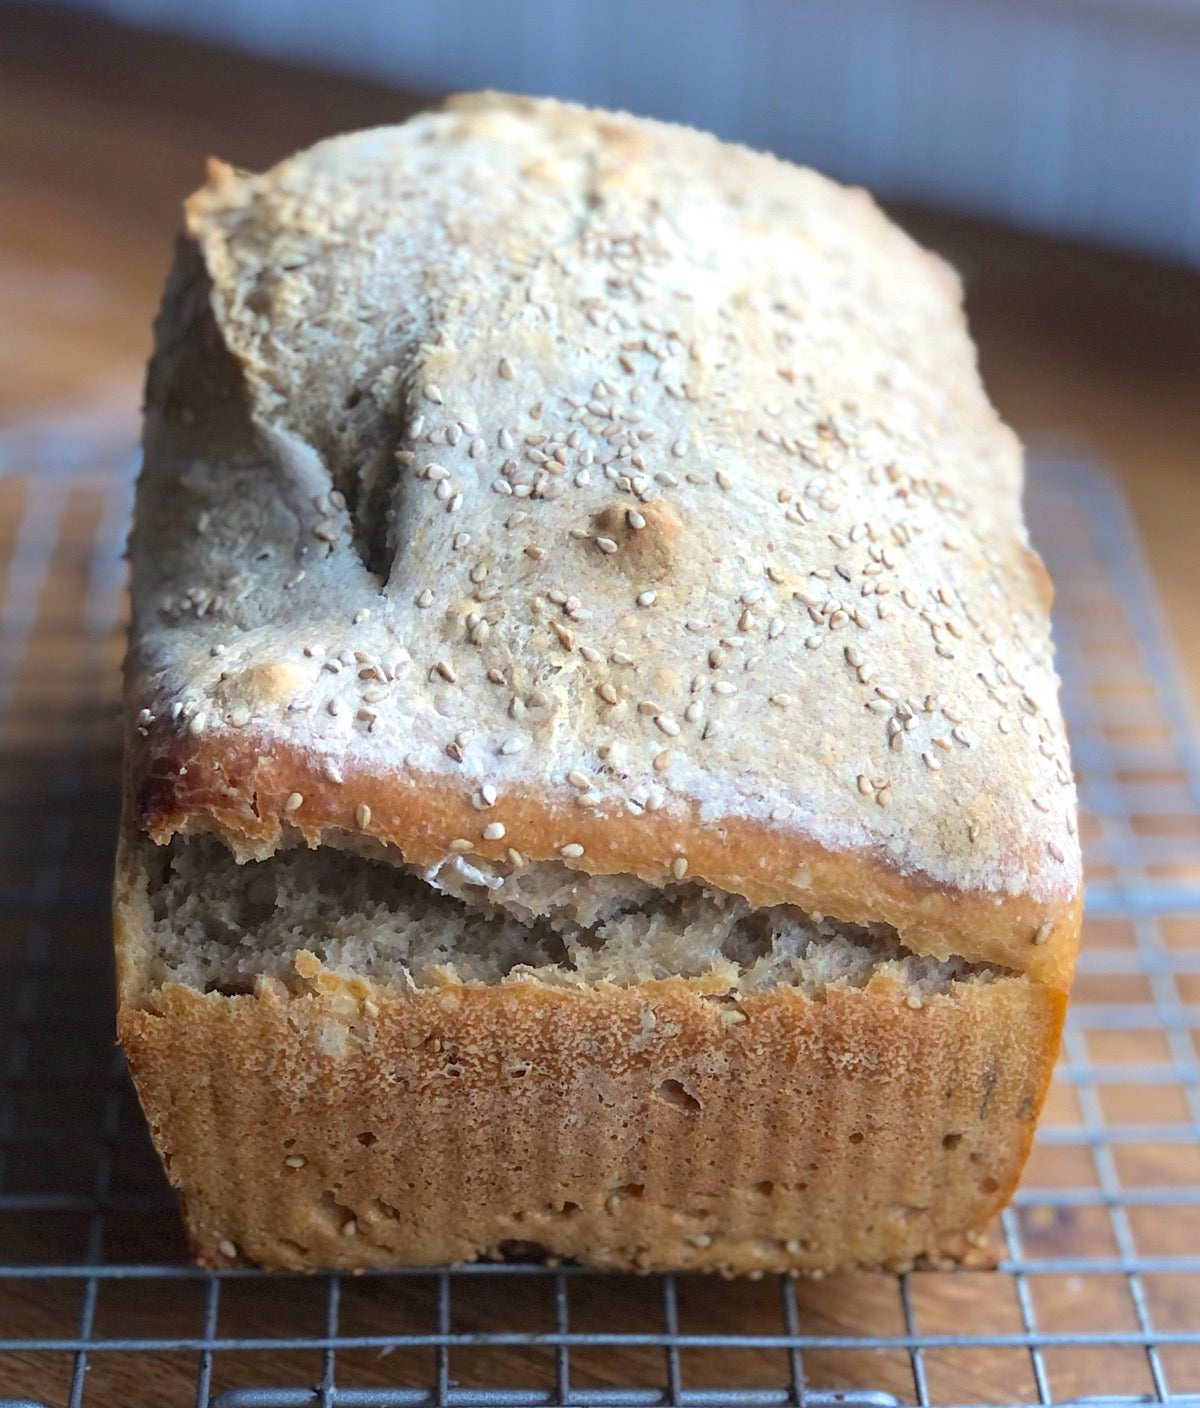 Sourdough bread baked in a 9" x 5" pan; sides split, top bumpy.